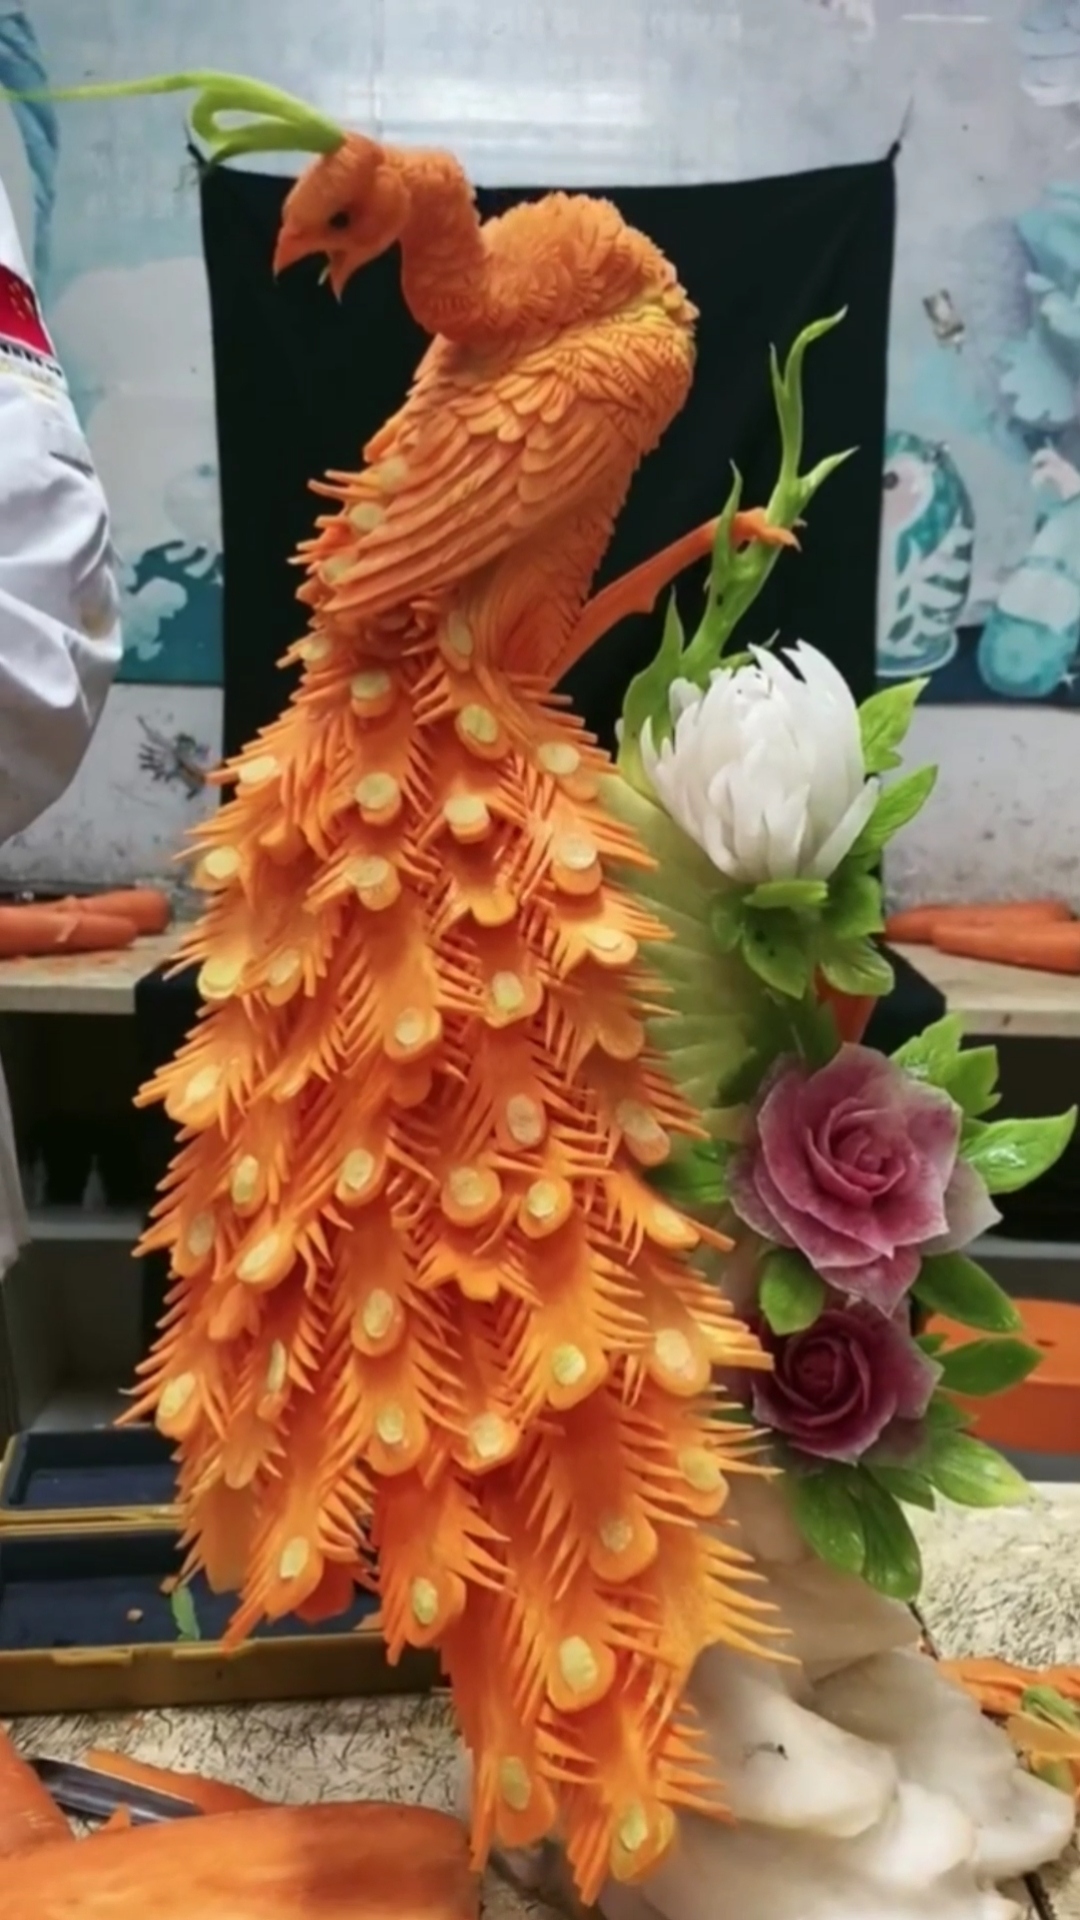 从在白色背景的一棵红萝卜雕刻的红色龙-食物雕刻紧密图象 库存图片 - 图片 包括有 设计, 创造性: 137774299